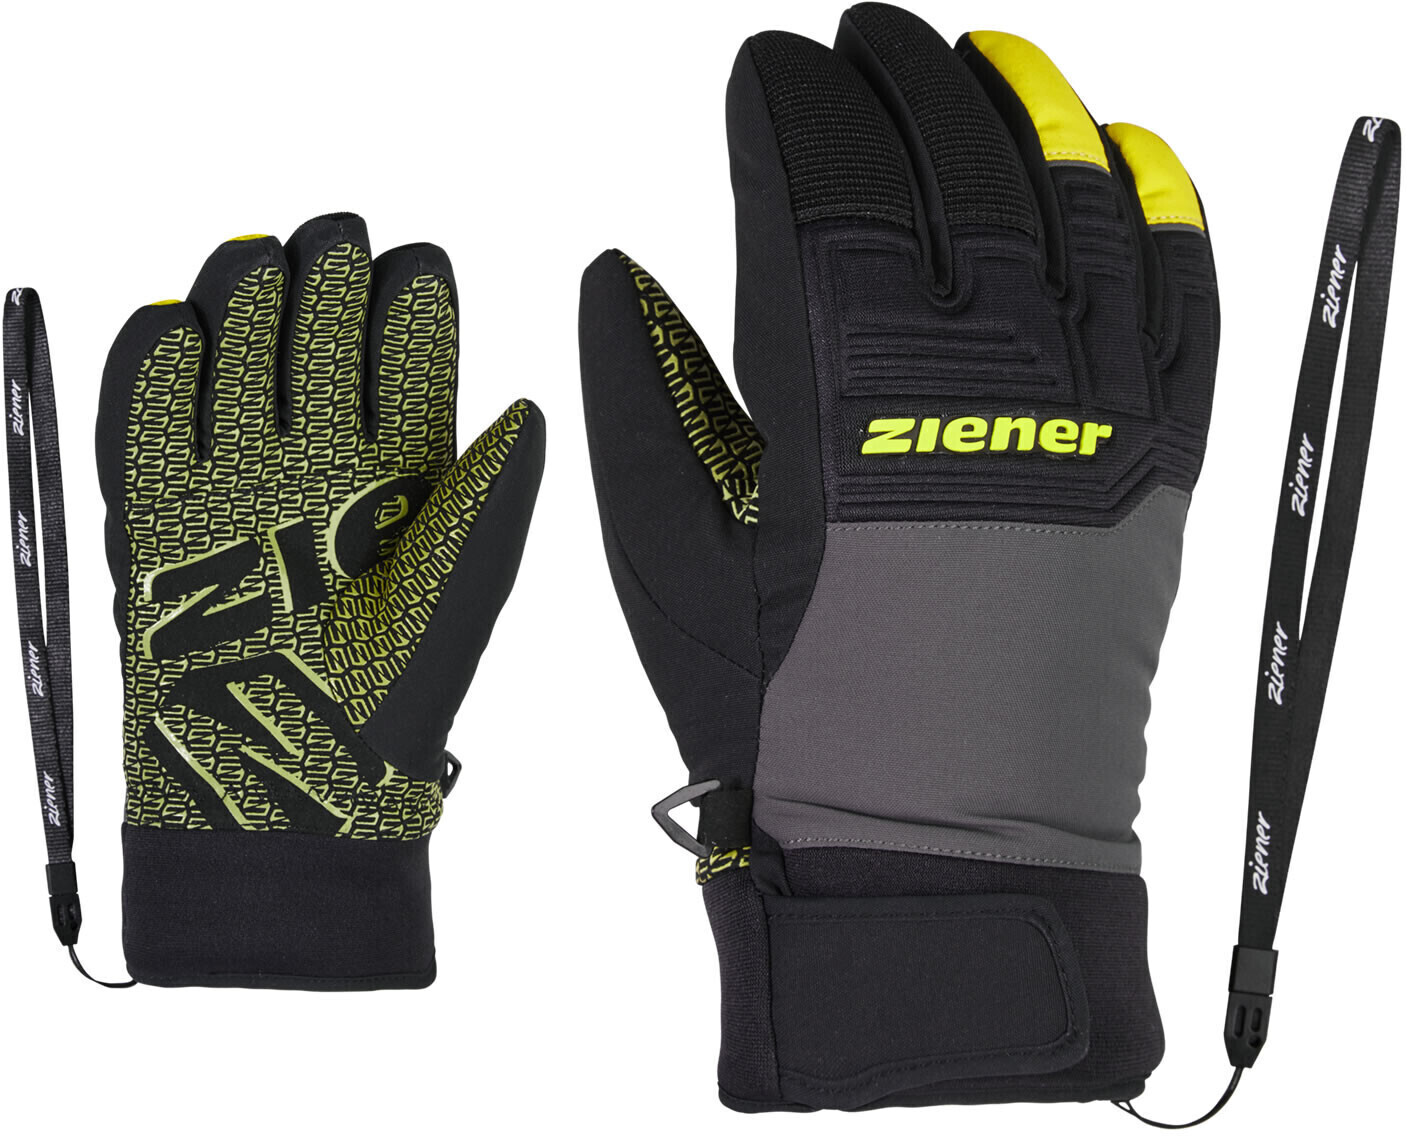 (801983) Ziener | ab bei magnet PR Preisvergleich € ASR Glove 19,99 Junior Lanus